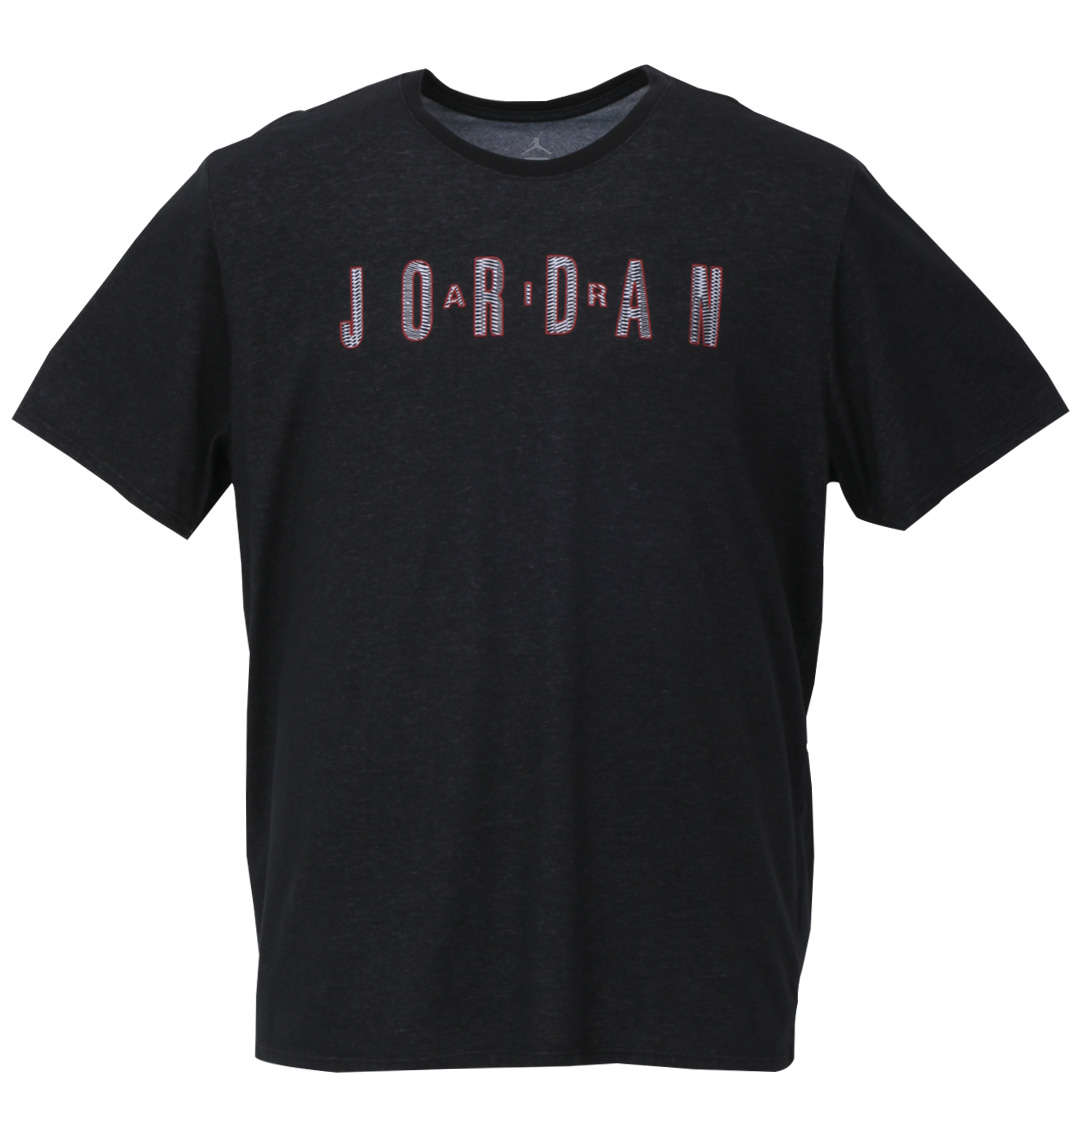 大きいサイズ メンズ JORDAN (エアジョーダン) 半袖Tシャツ 